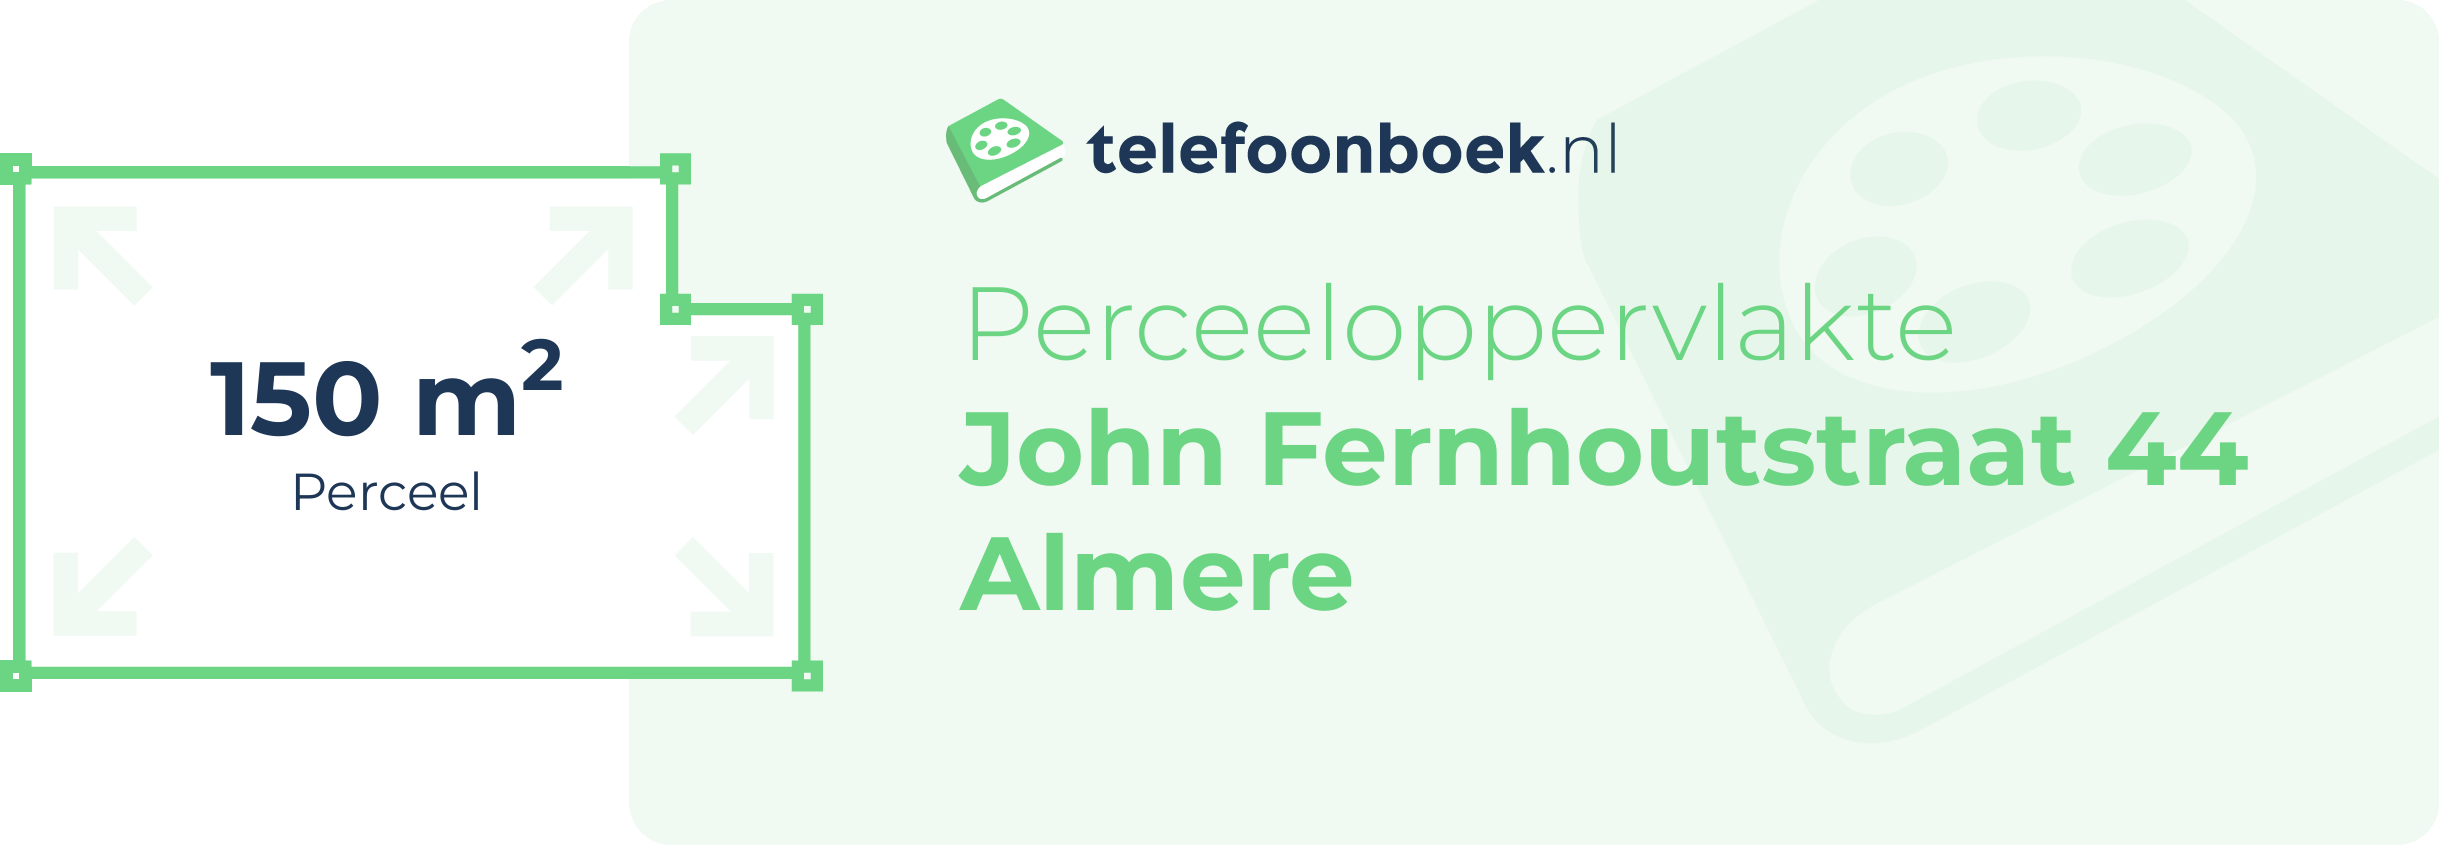 Perceeloppervlakte John Fernhoutstraat 44 Almere